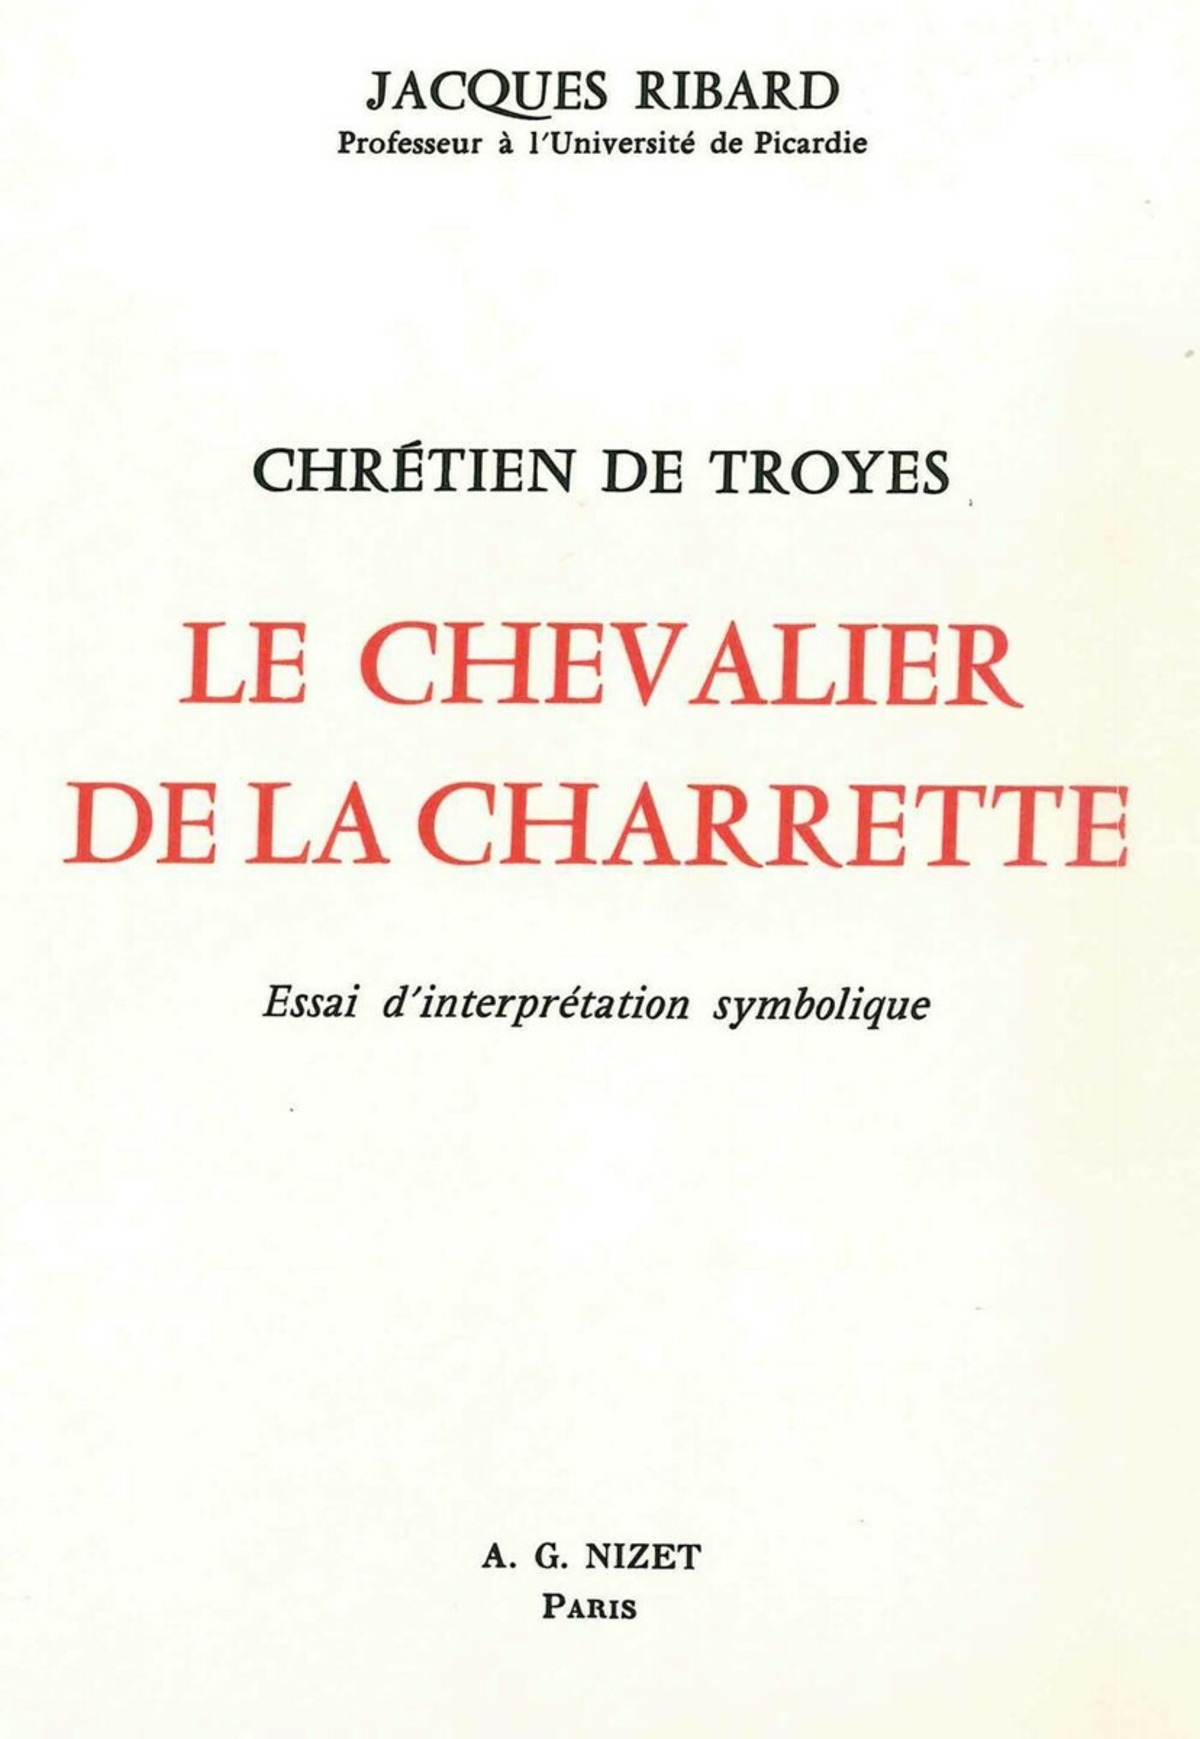 Chrétien de Troyes, Le Chevalier de la Charrette